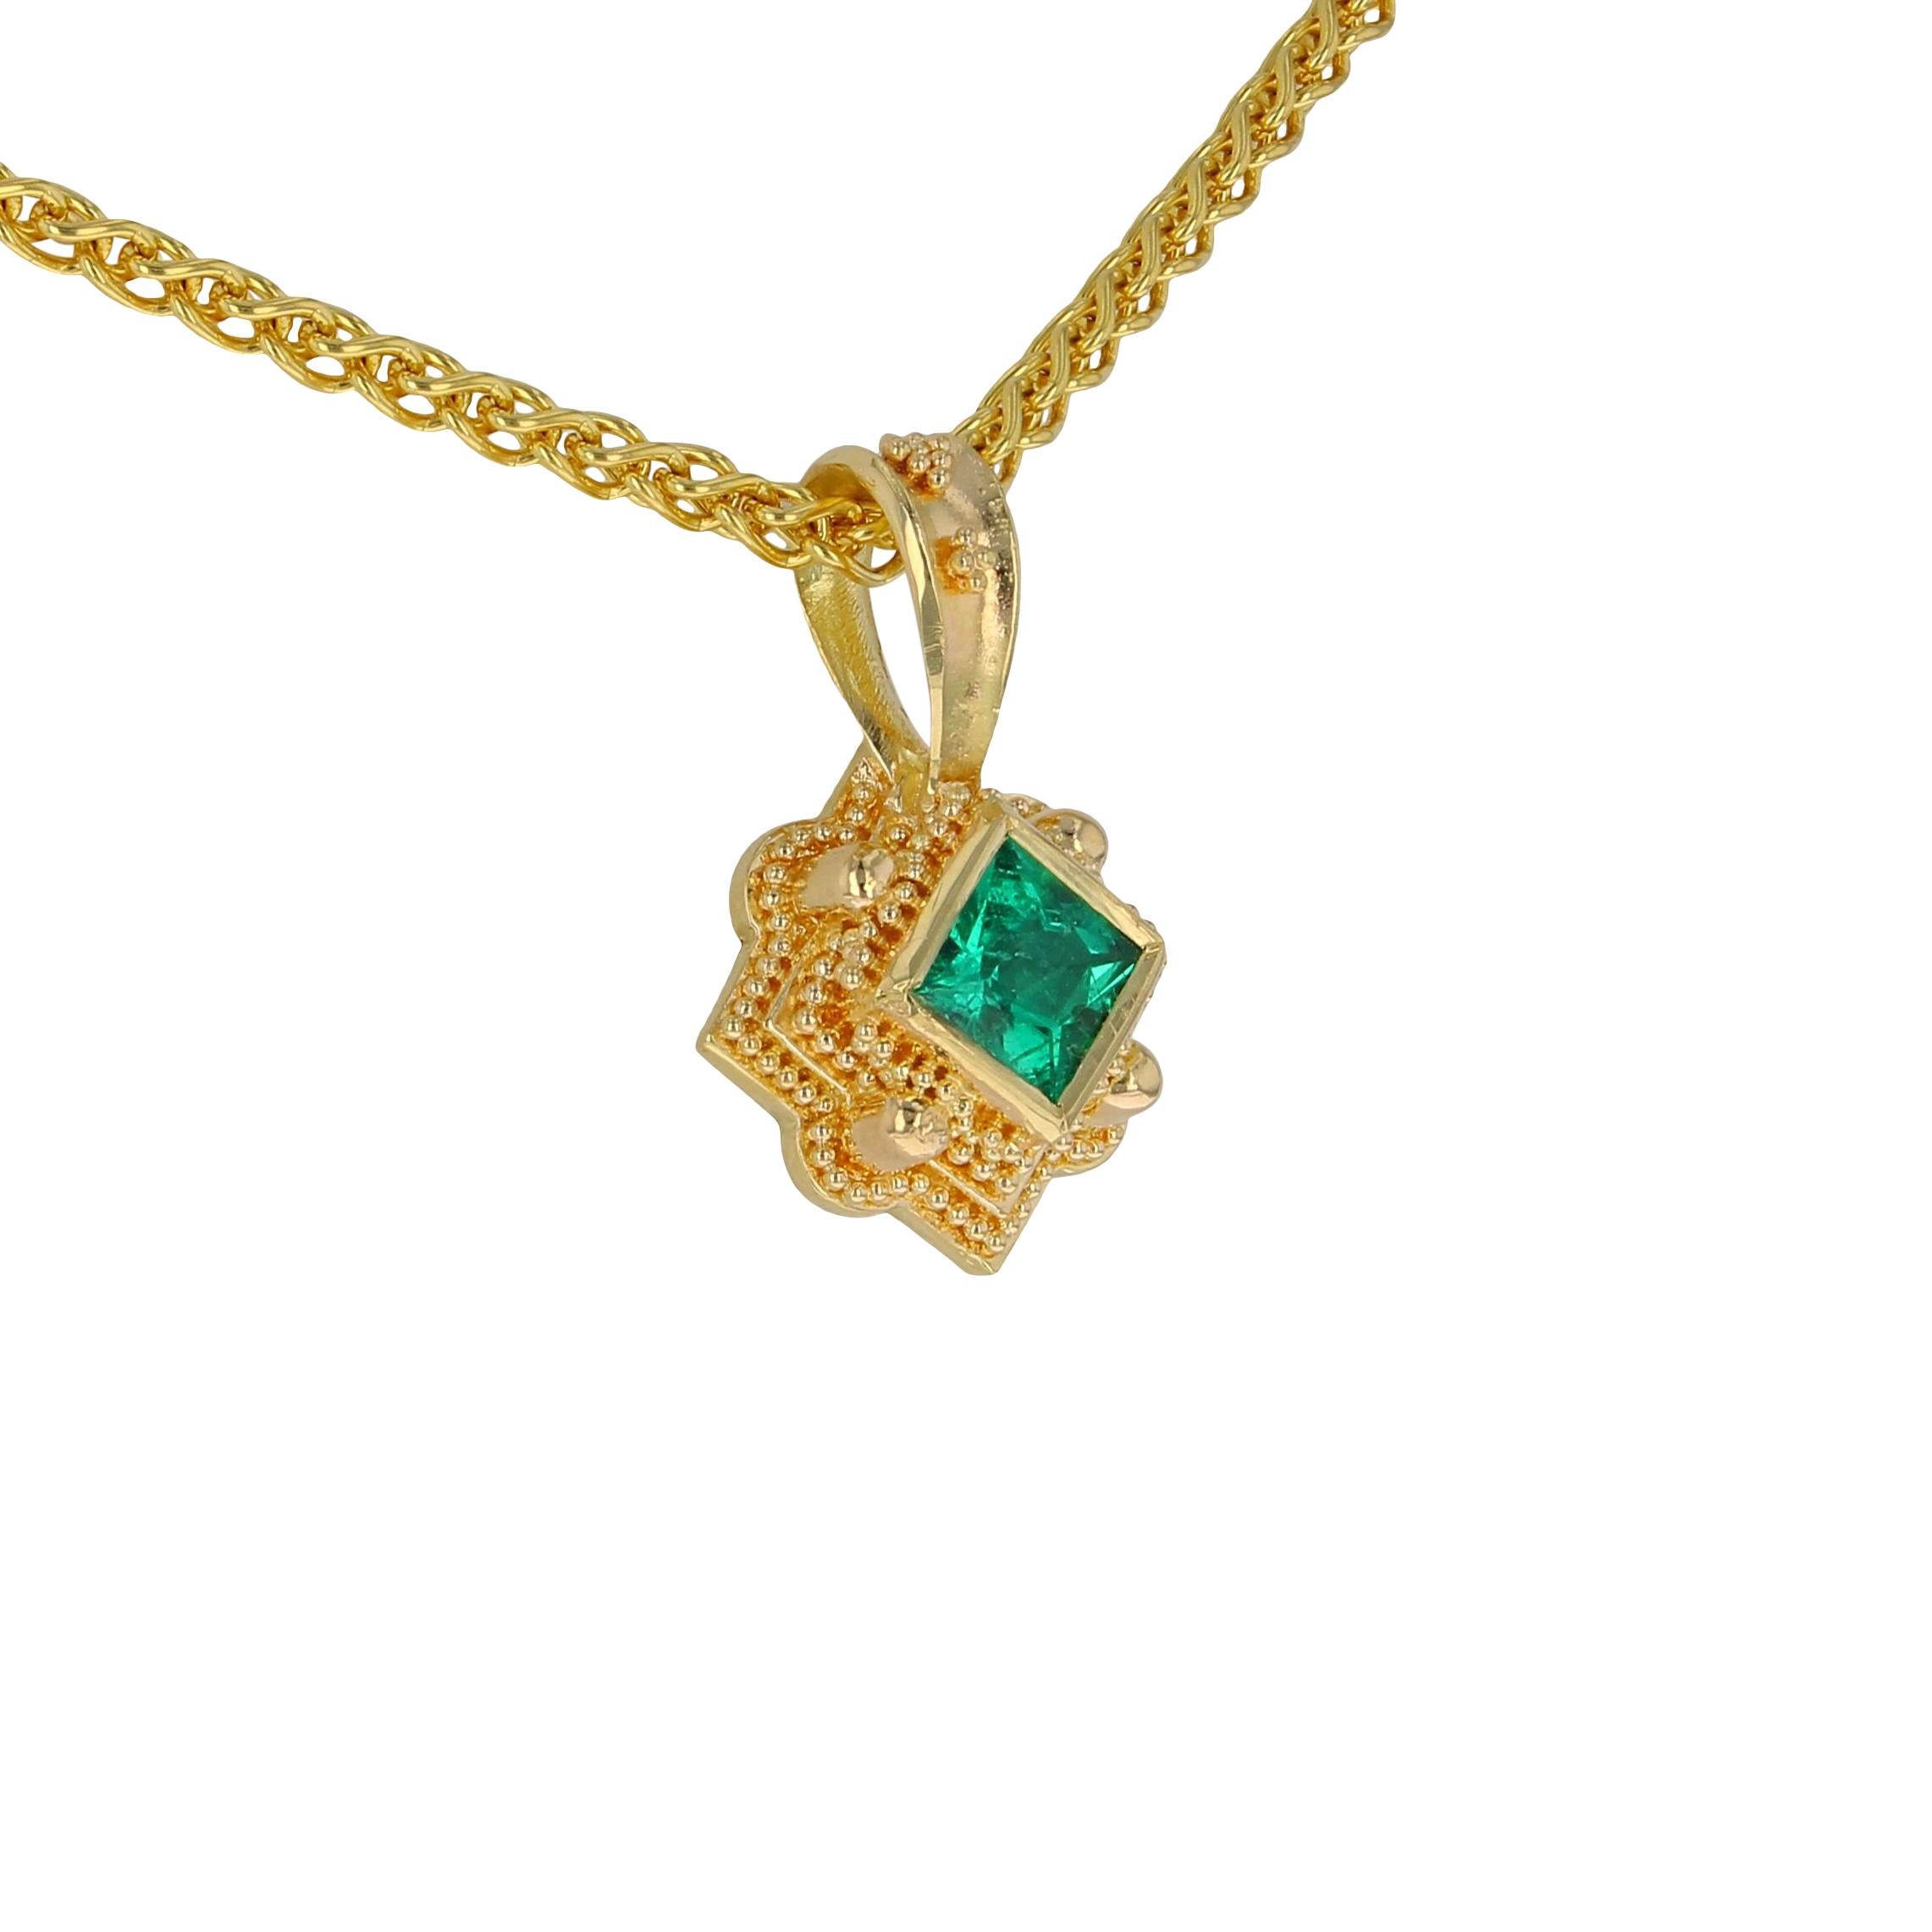 Princess Cut Kent Raible's 18 Karat Gold Emerald Necklace Enhancer Pendant, Granulation